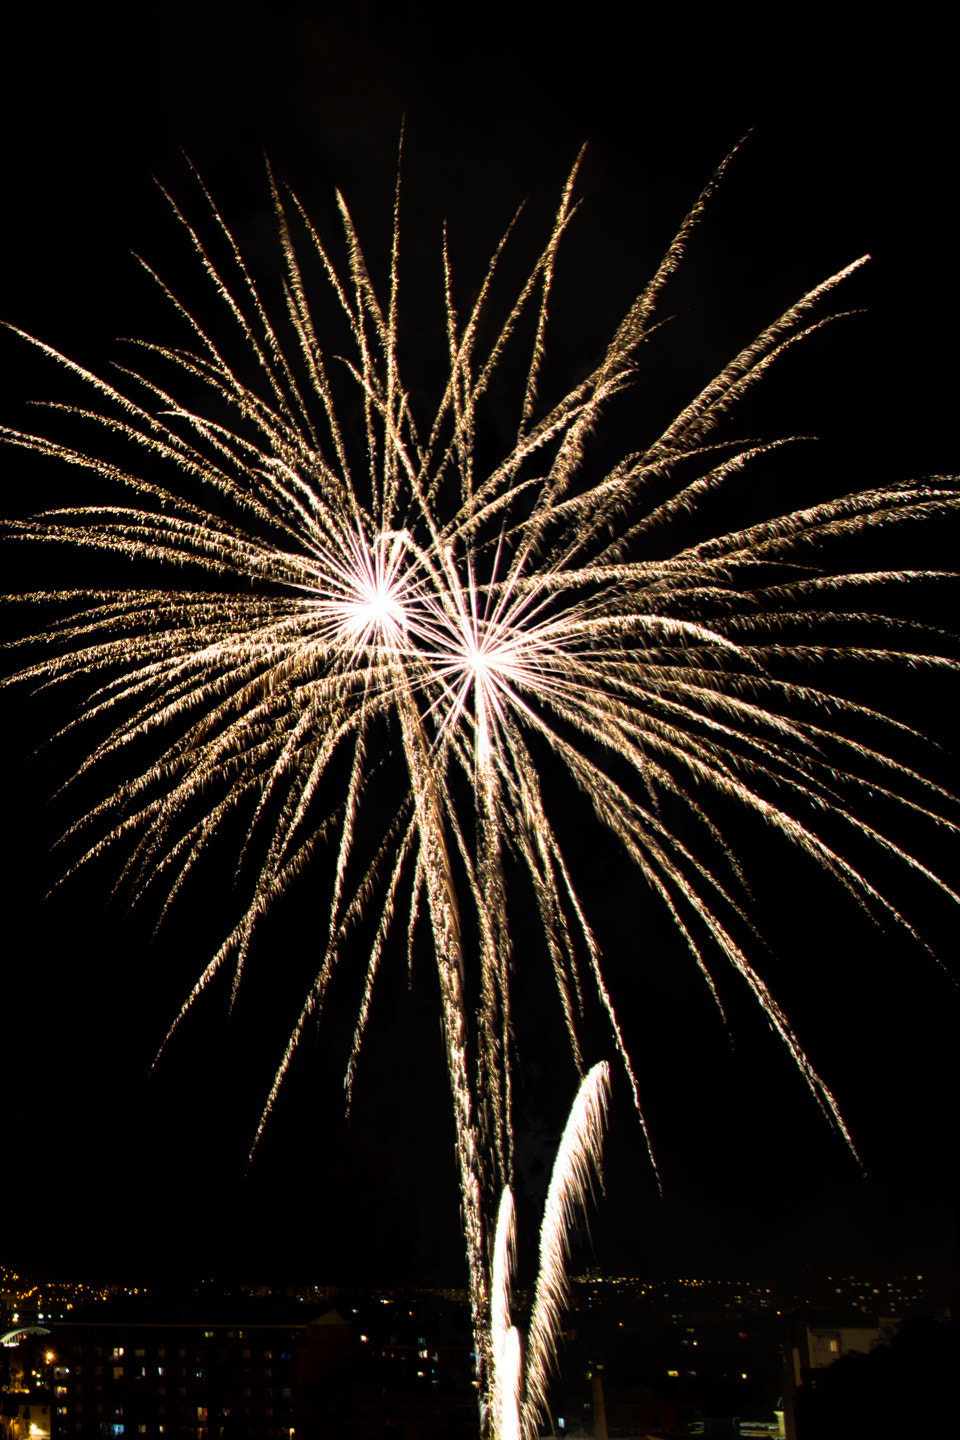 AF Zoom-Nikkor 35-70mm f/2.8D N sample photo. Fireworks photography